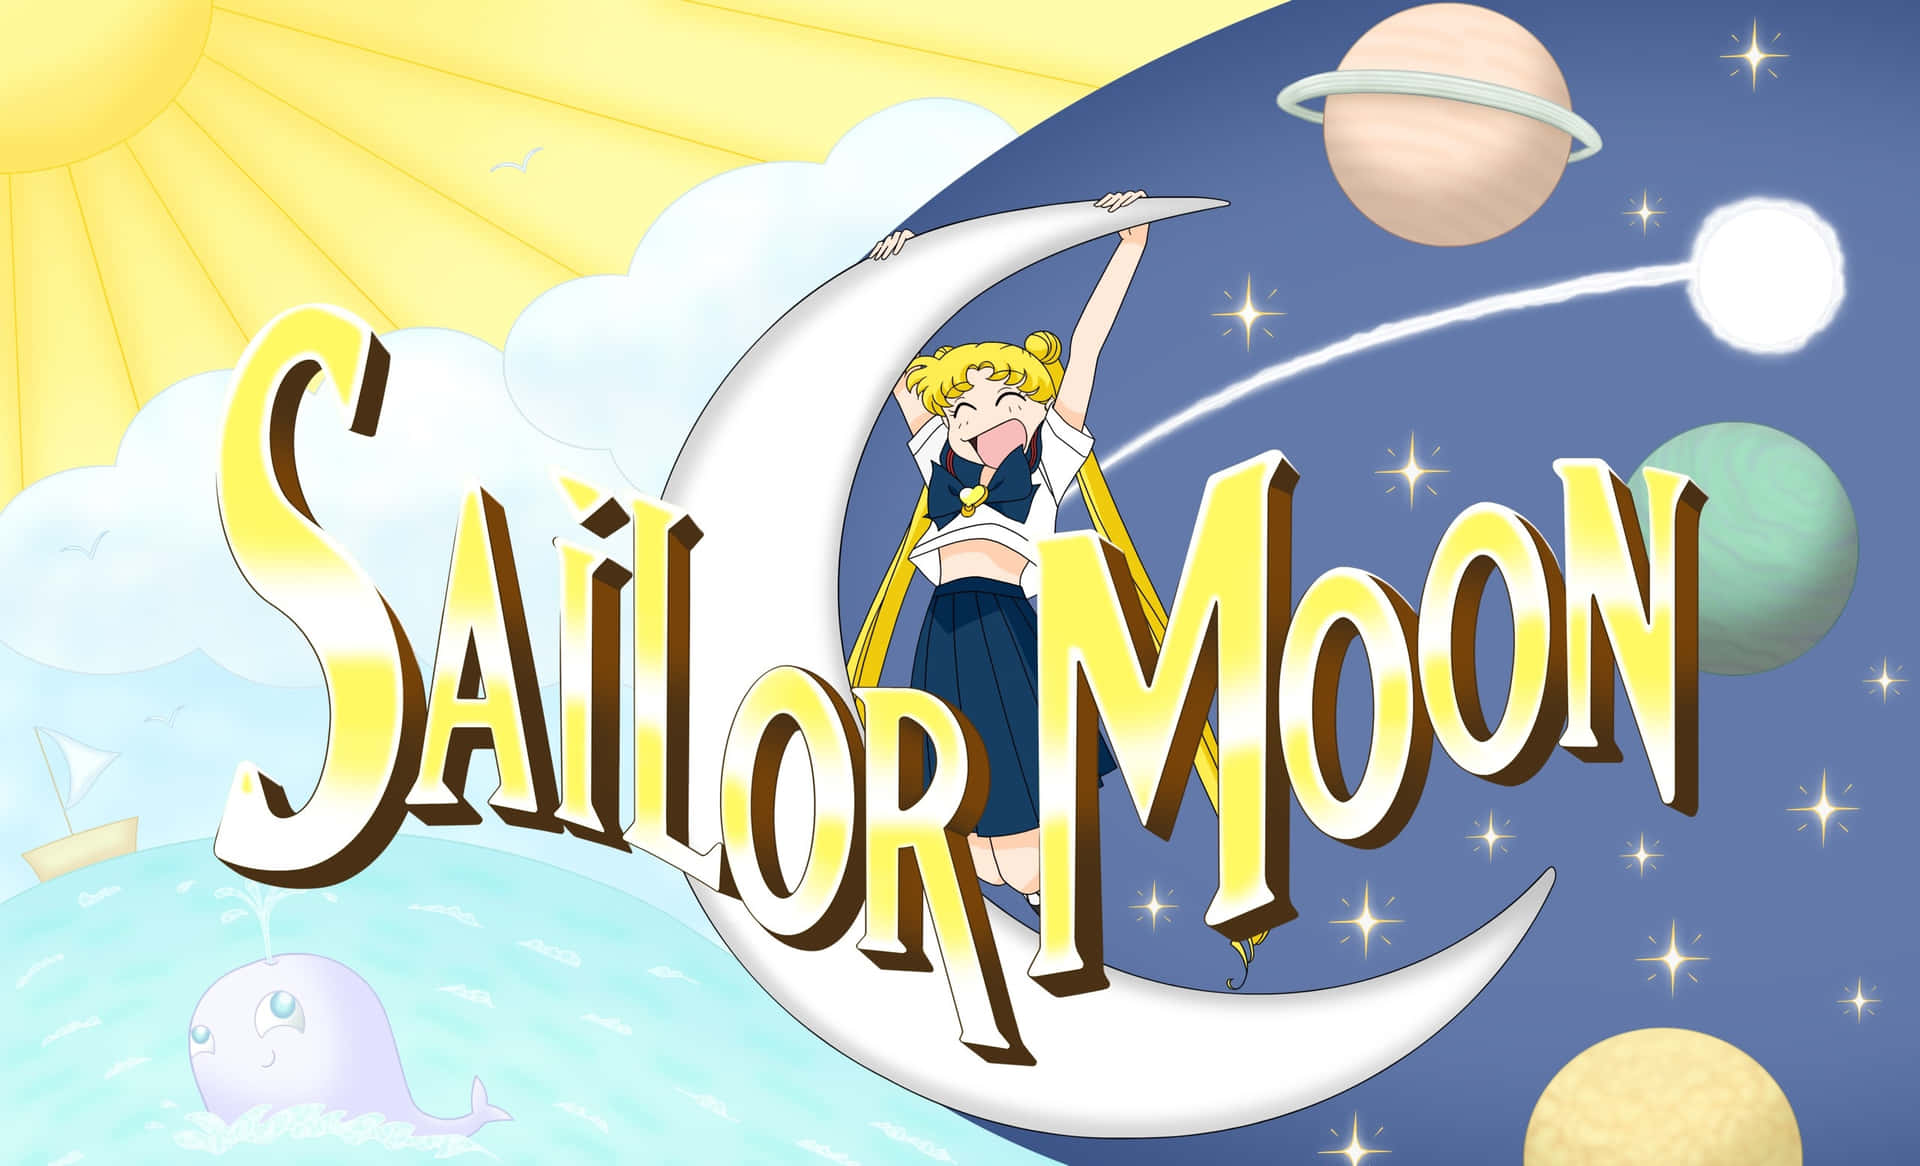 Sailormoon - Försvarar Kärlek Och Rättvisa